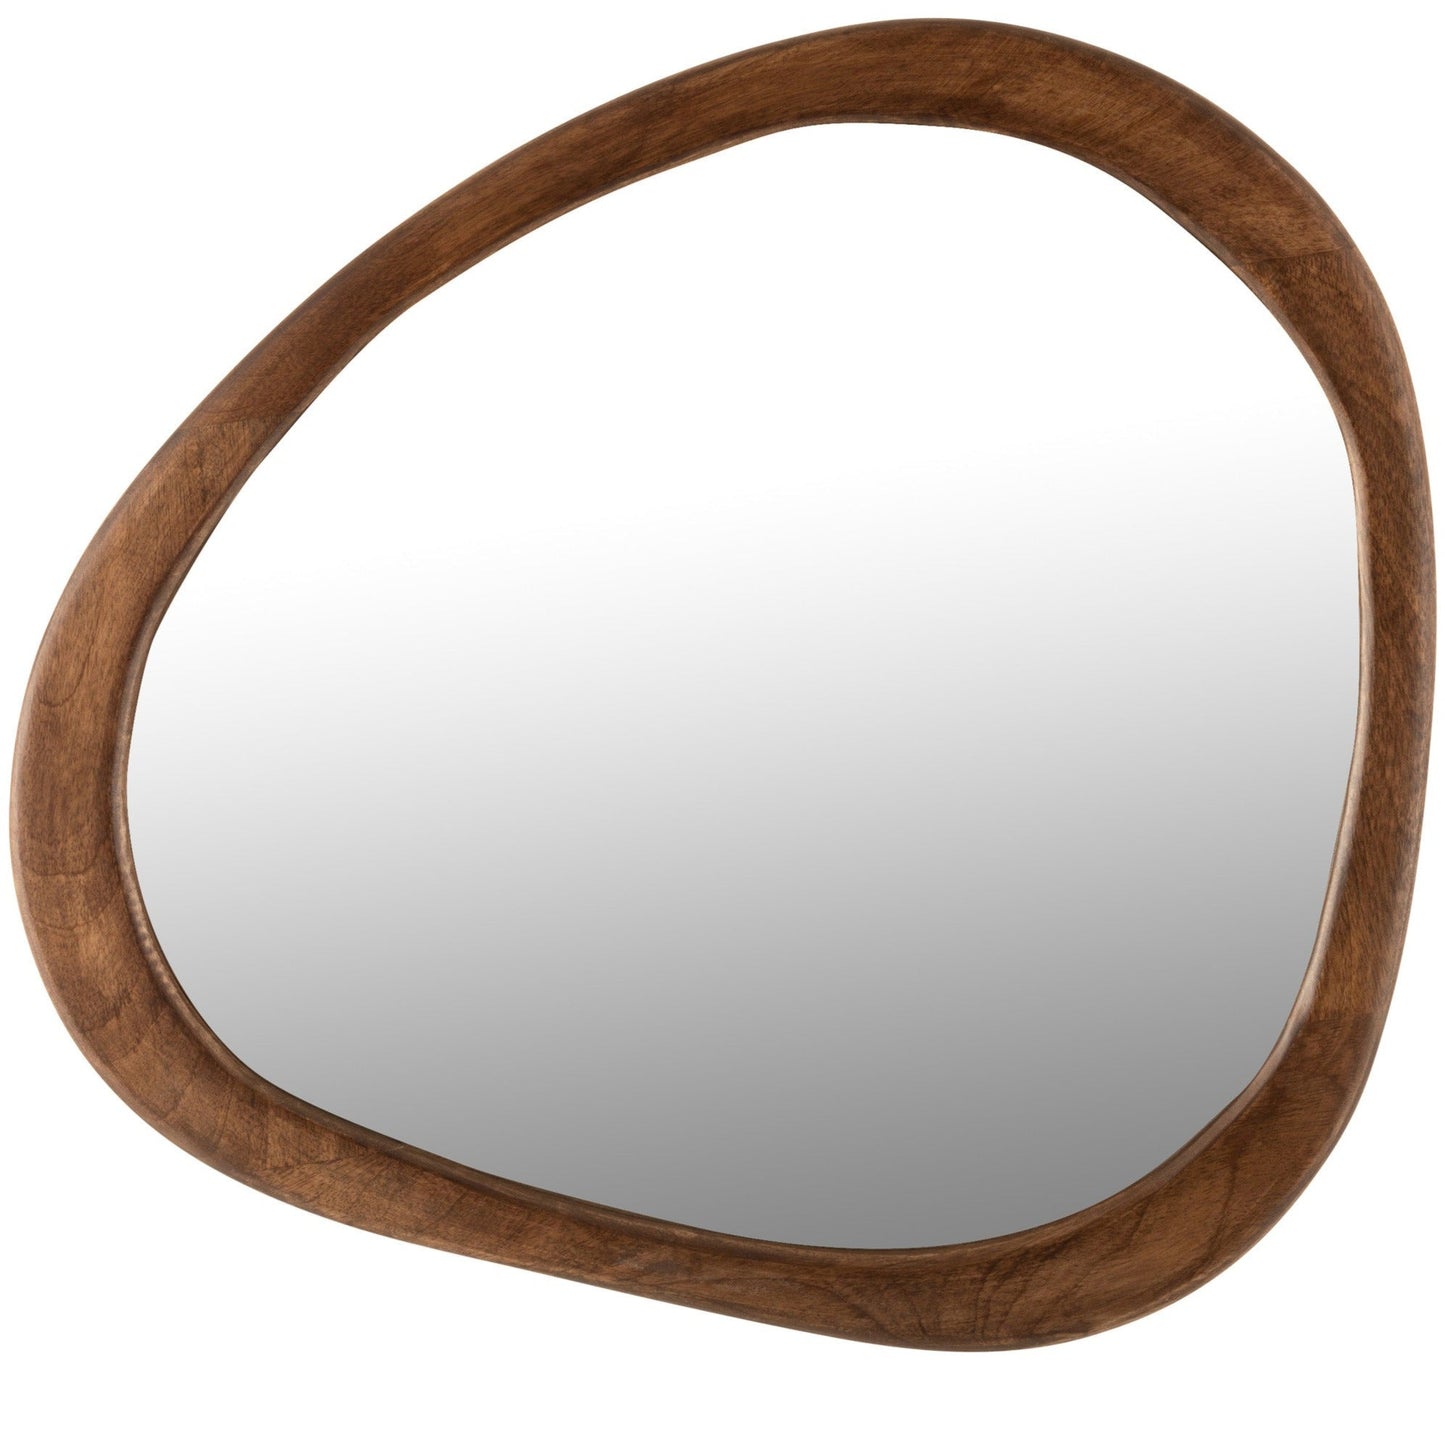 Irregular Brown Wood Mirror